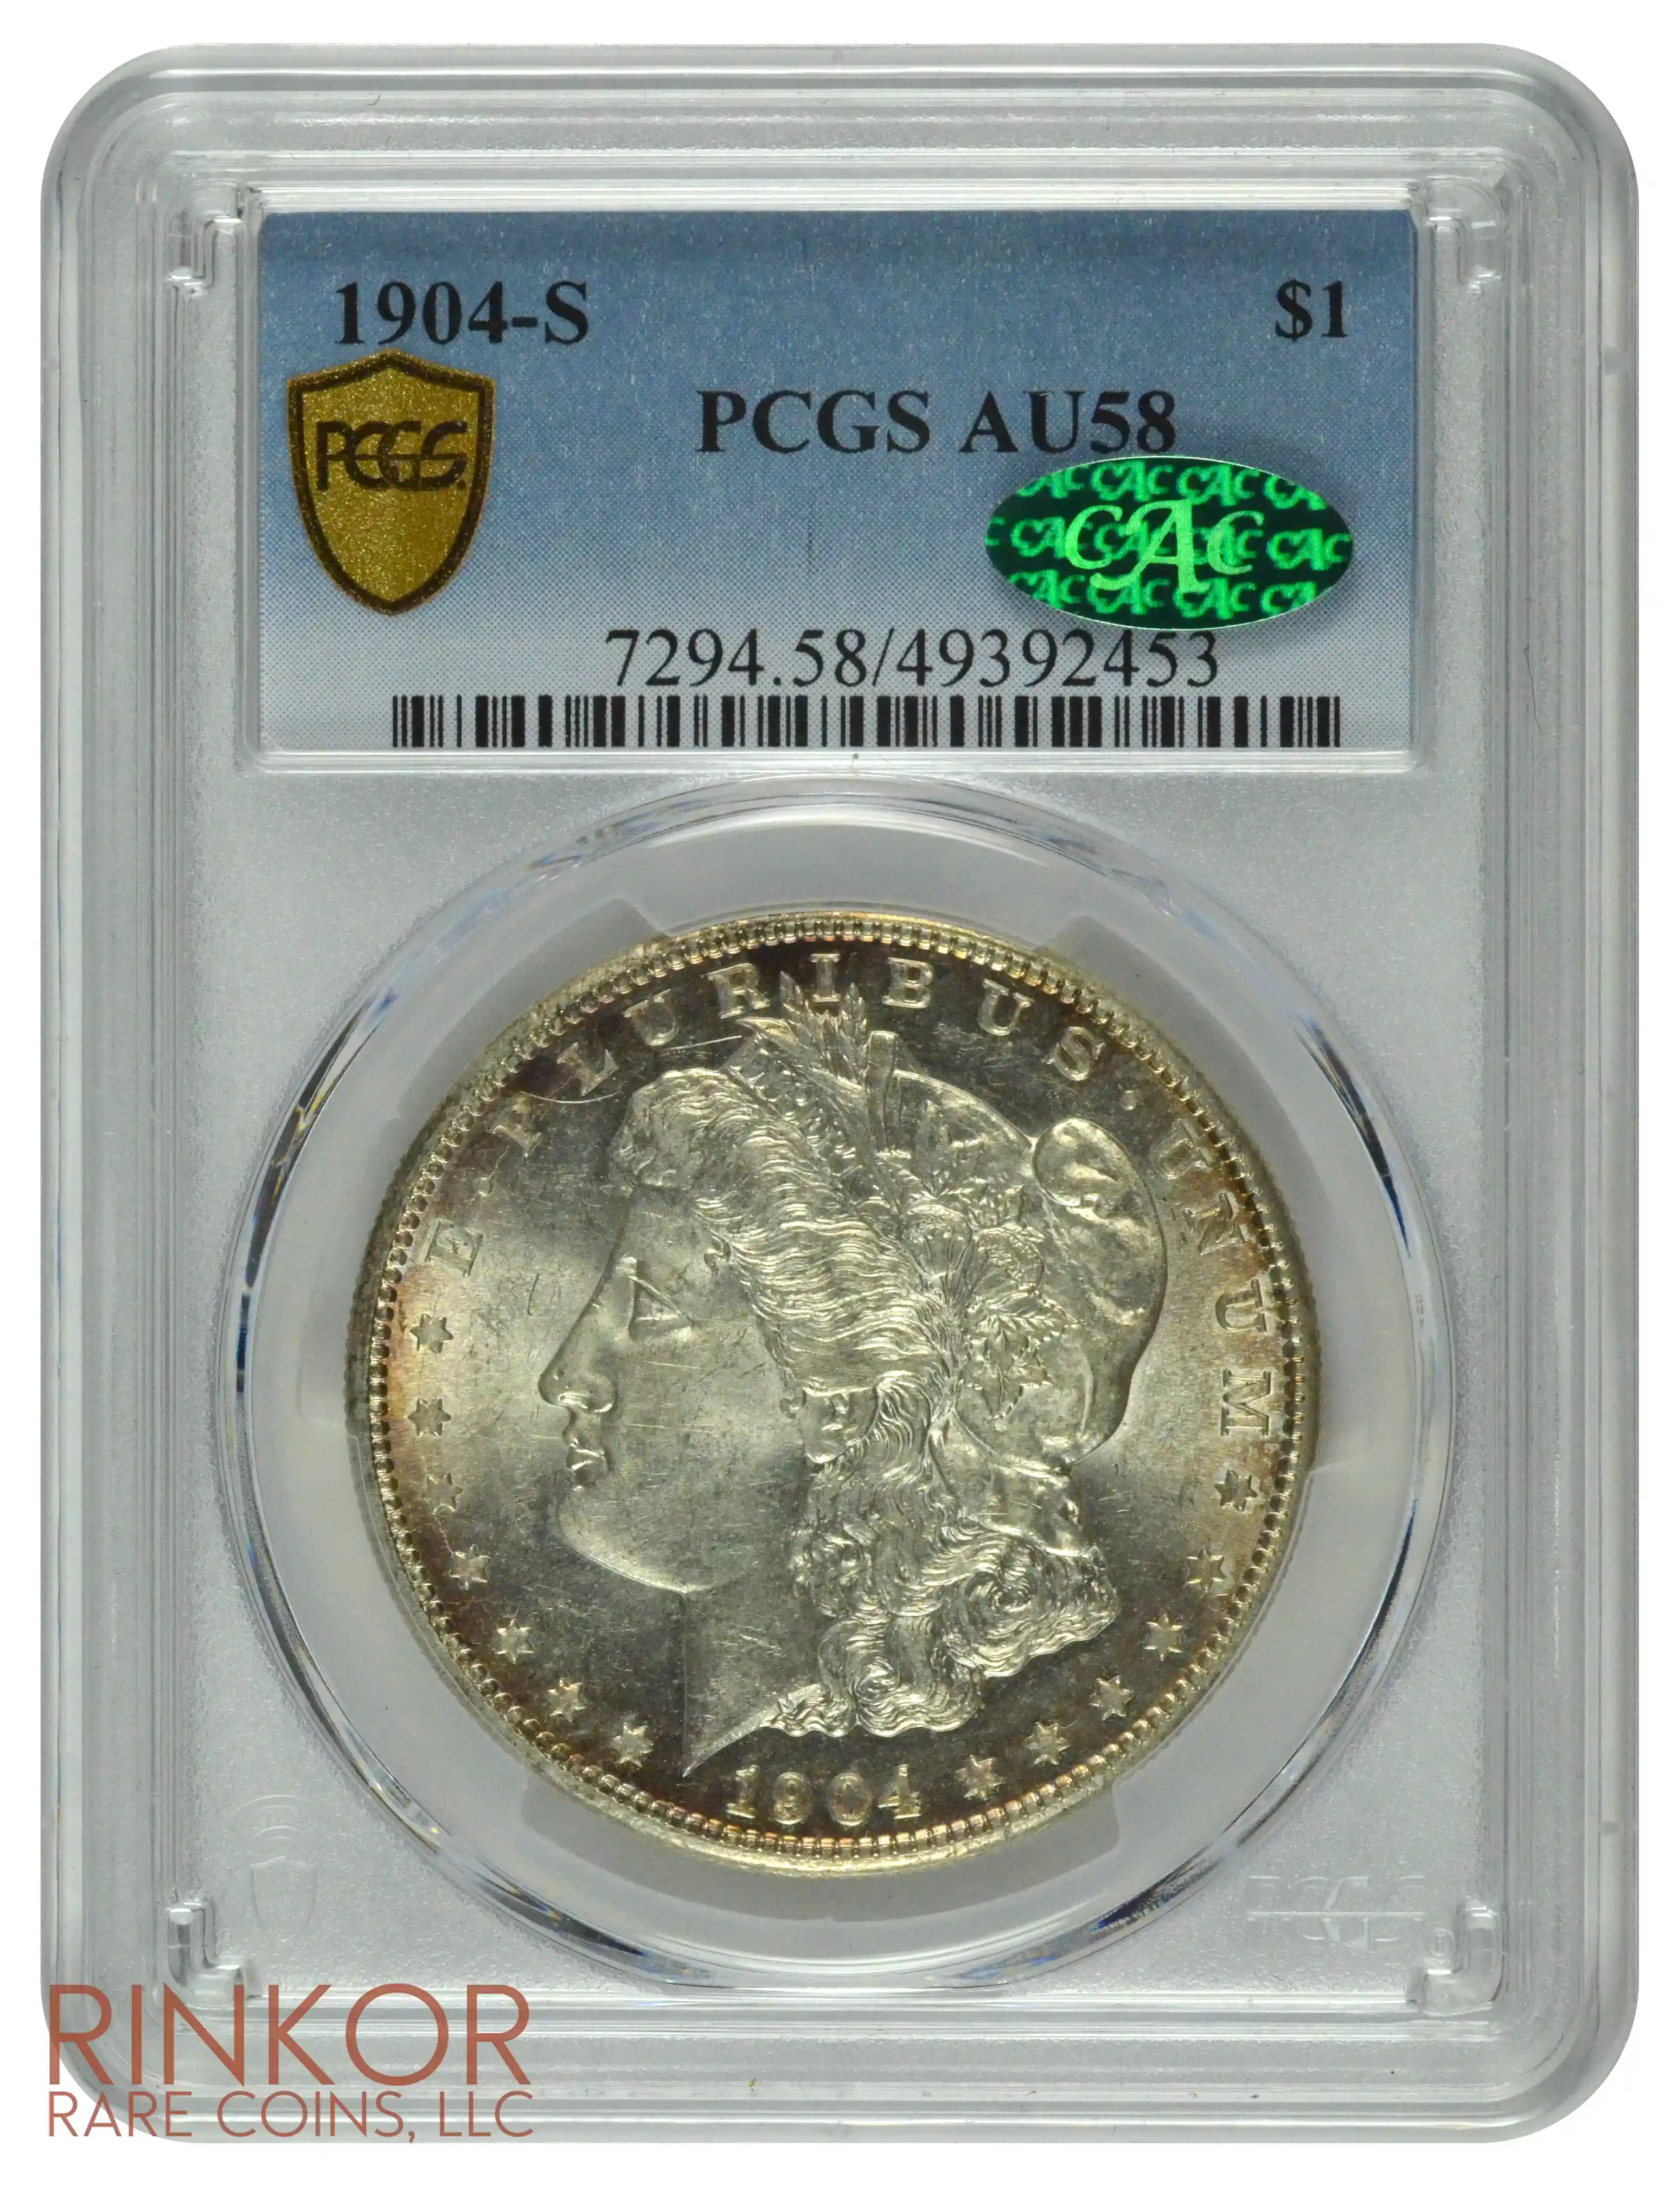 1904-S $1 PCGS